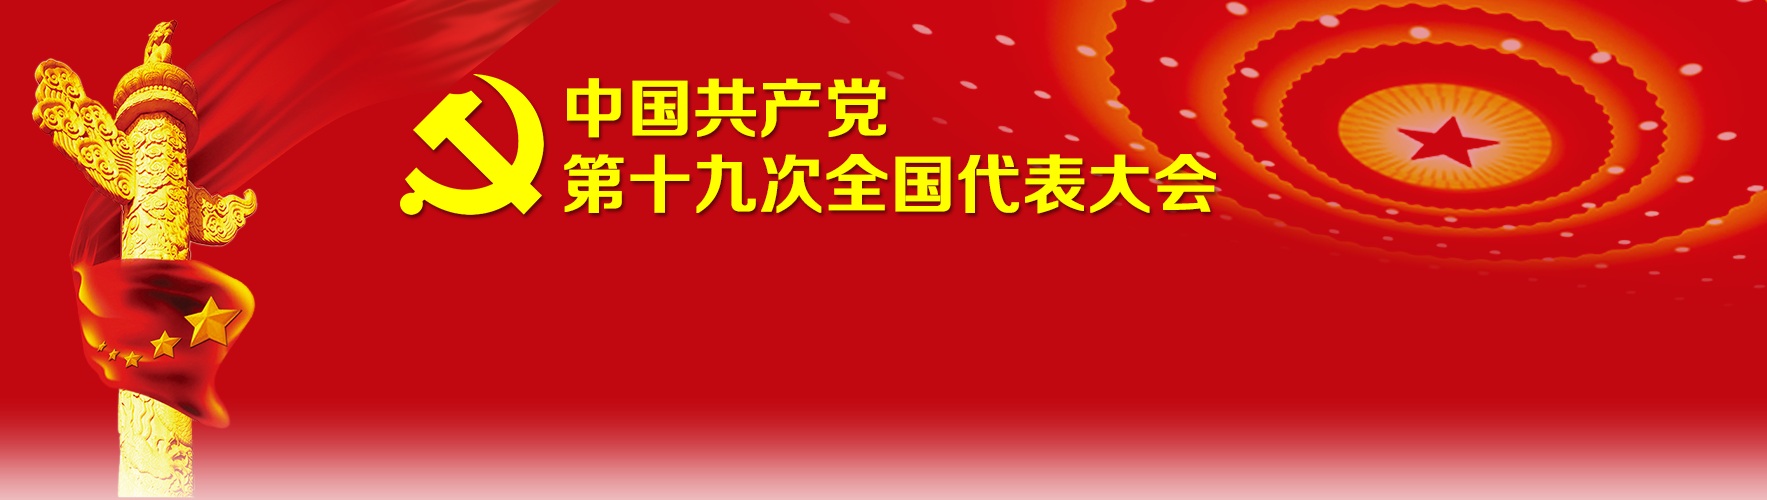 中国共产党第十九次全国代表大会将于2017年10月18日在北京召开